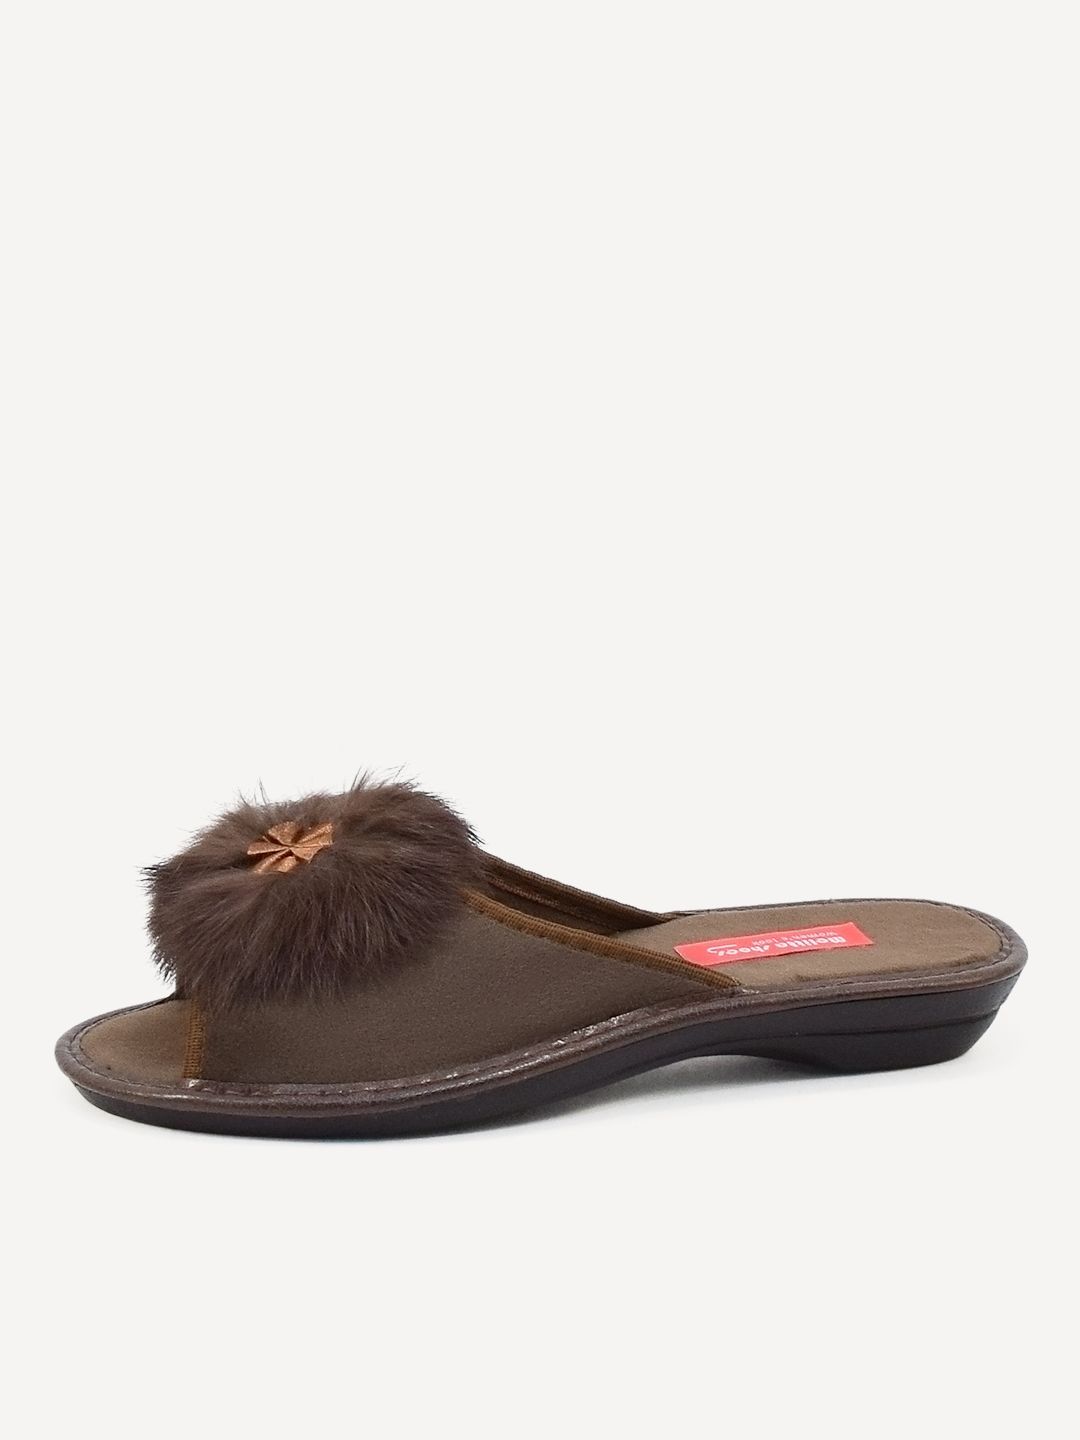 Тапочки женские Melitta Shoes W-086 коричневые 38 RU